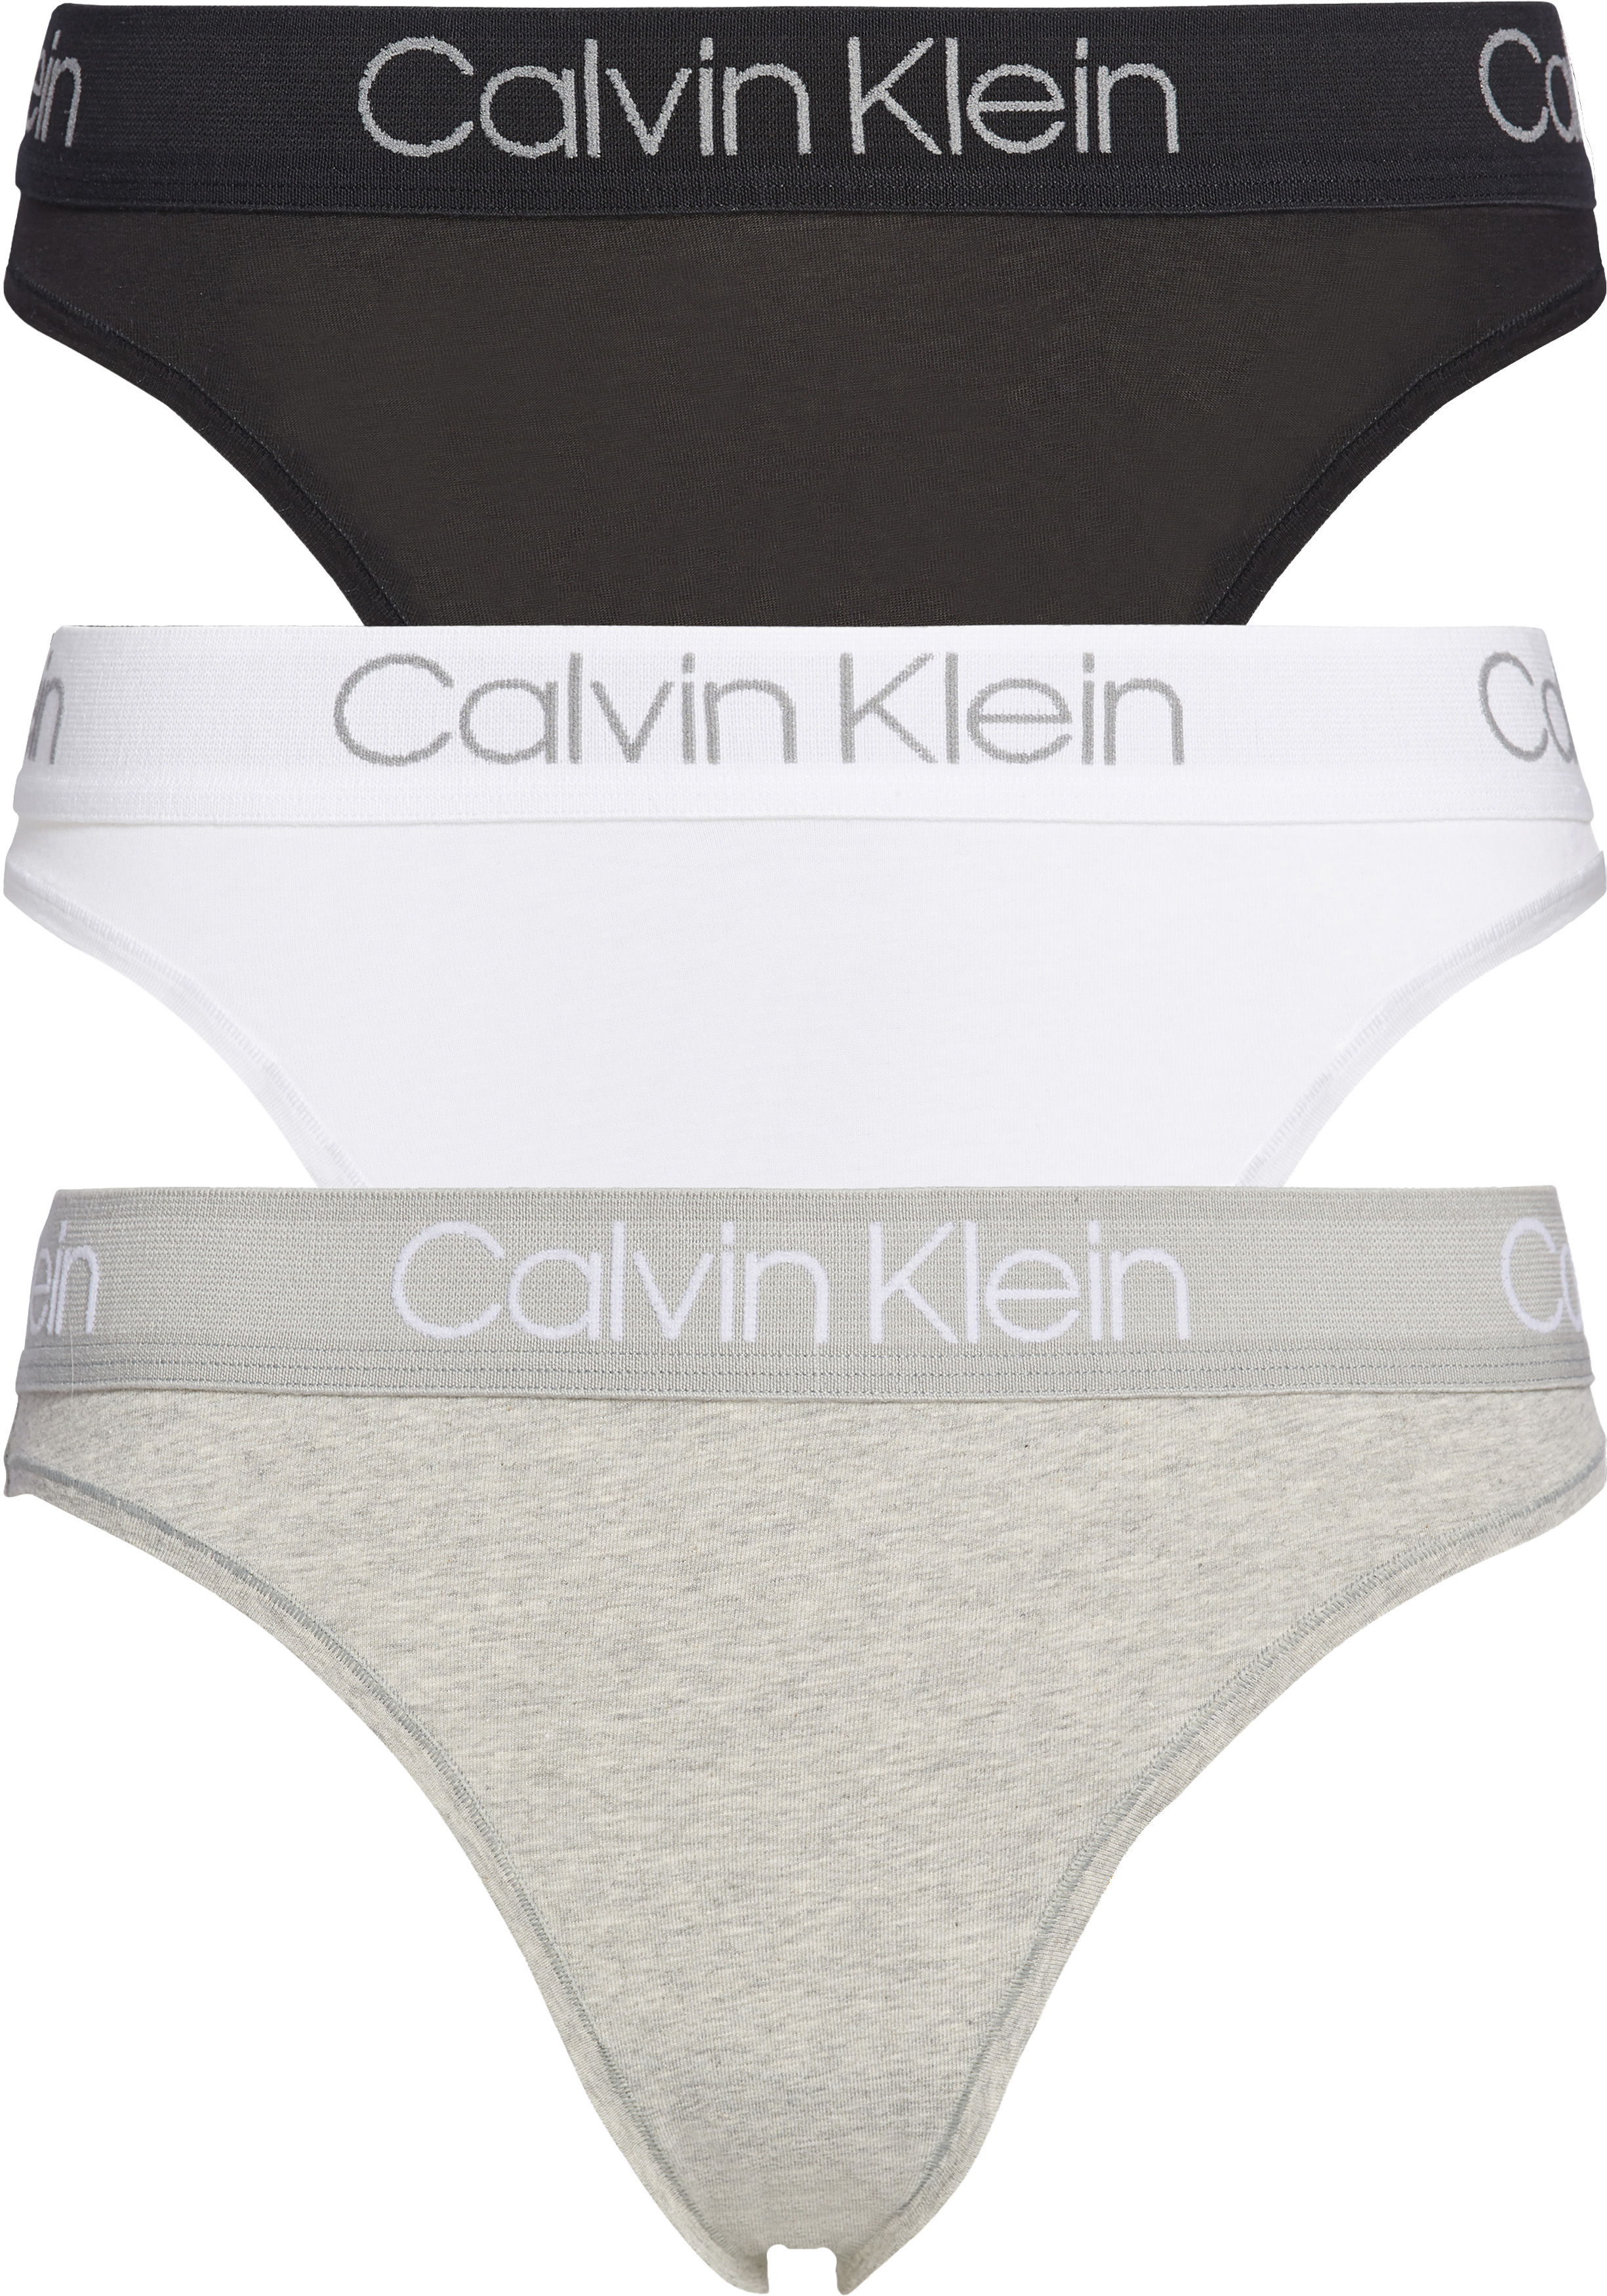 Calvin Klein-sale voor Dames, Kortingen & Aanbiedingen